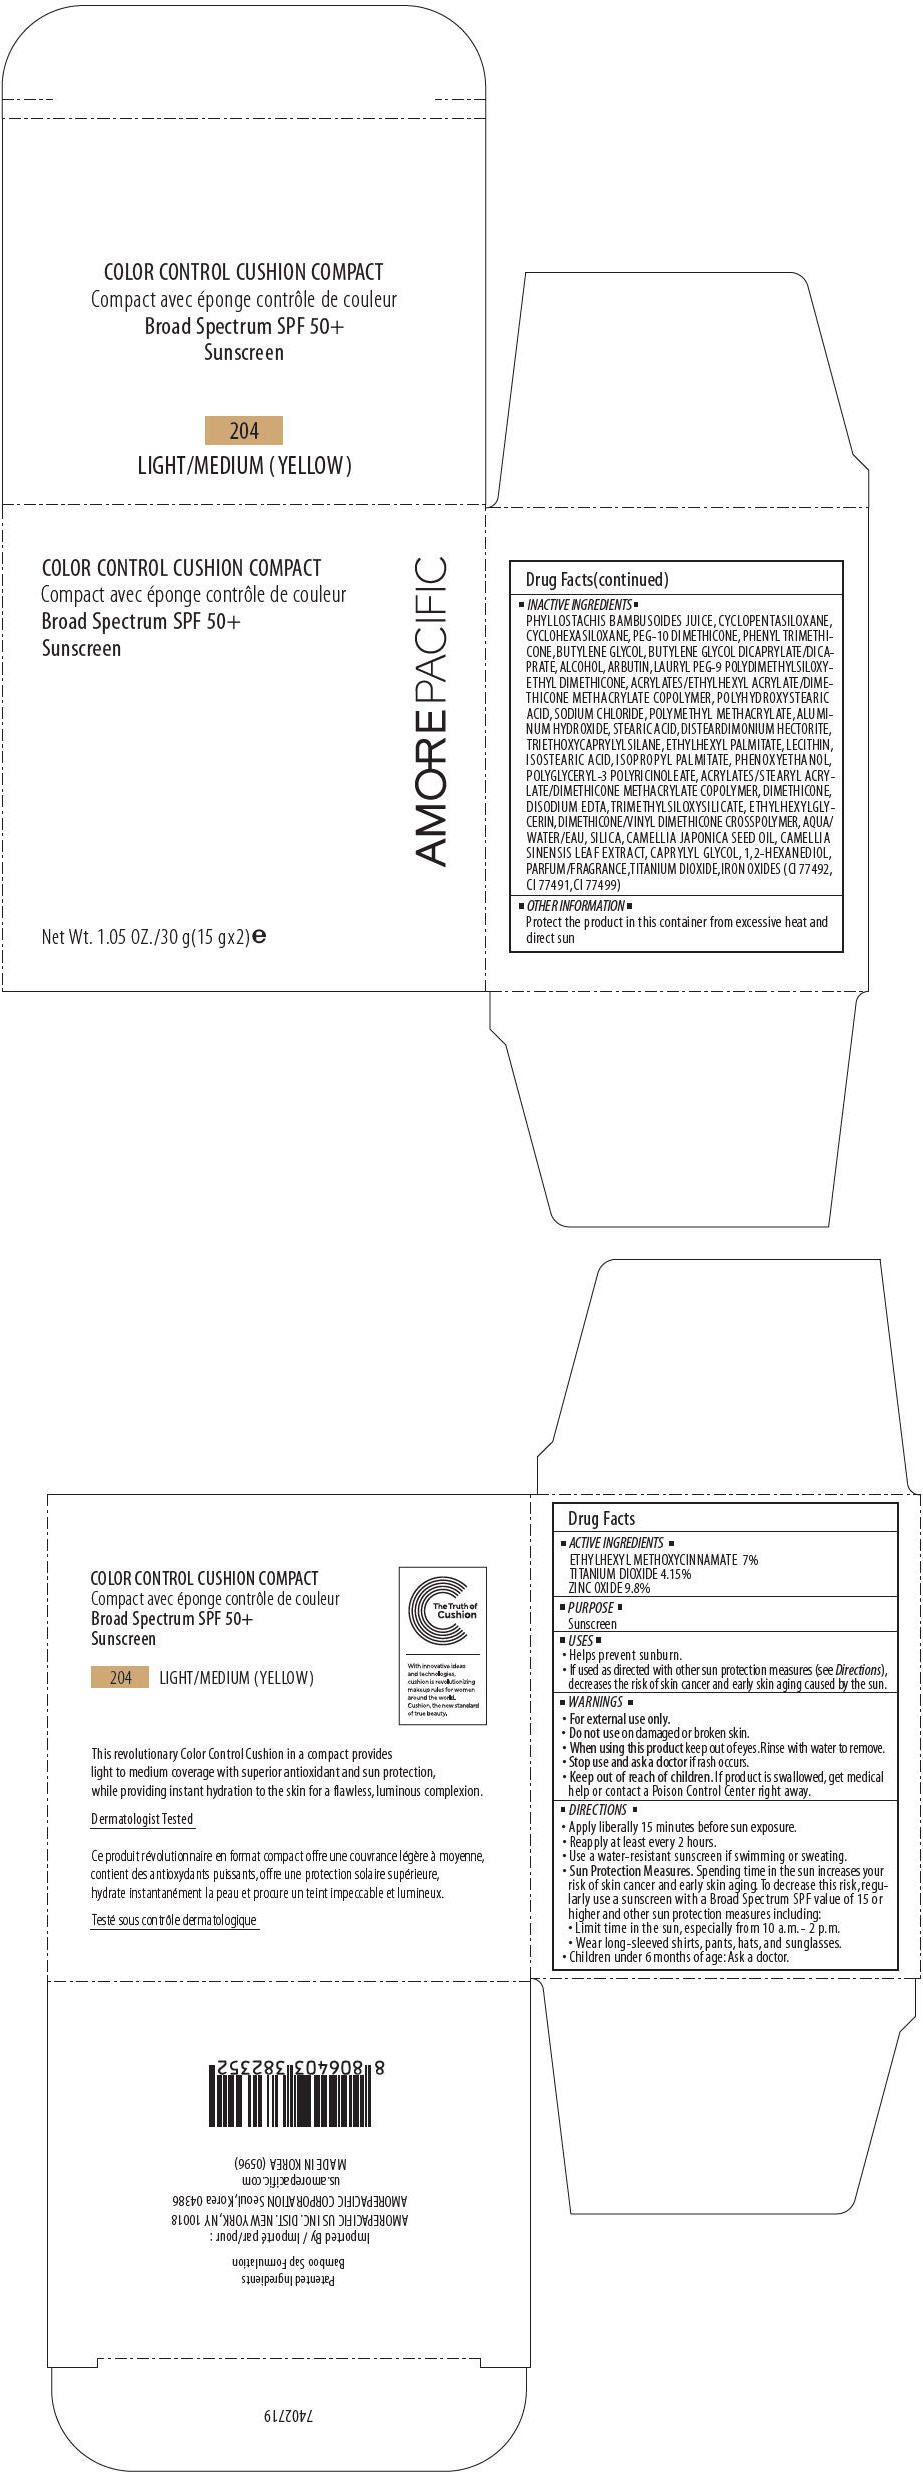 PRINCIPAL DISPLAY PANEL - 30 g Container Carton - 204  LIGHT/MEDIUM (YELLOW)